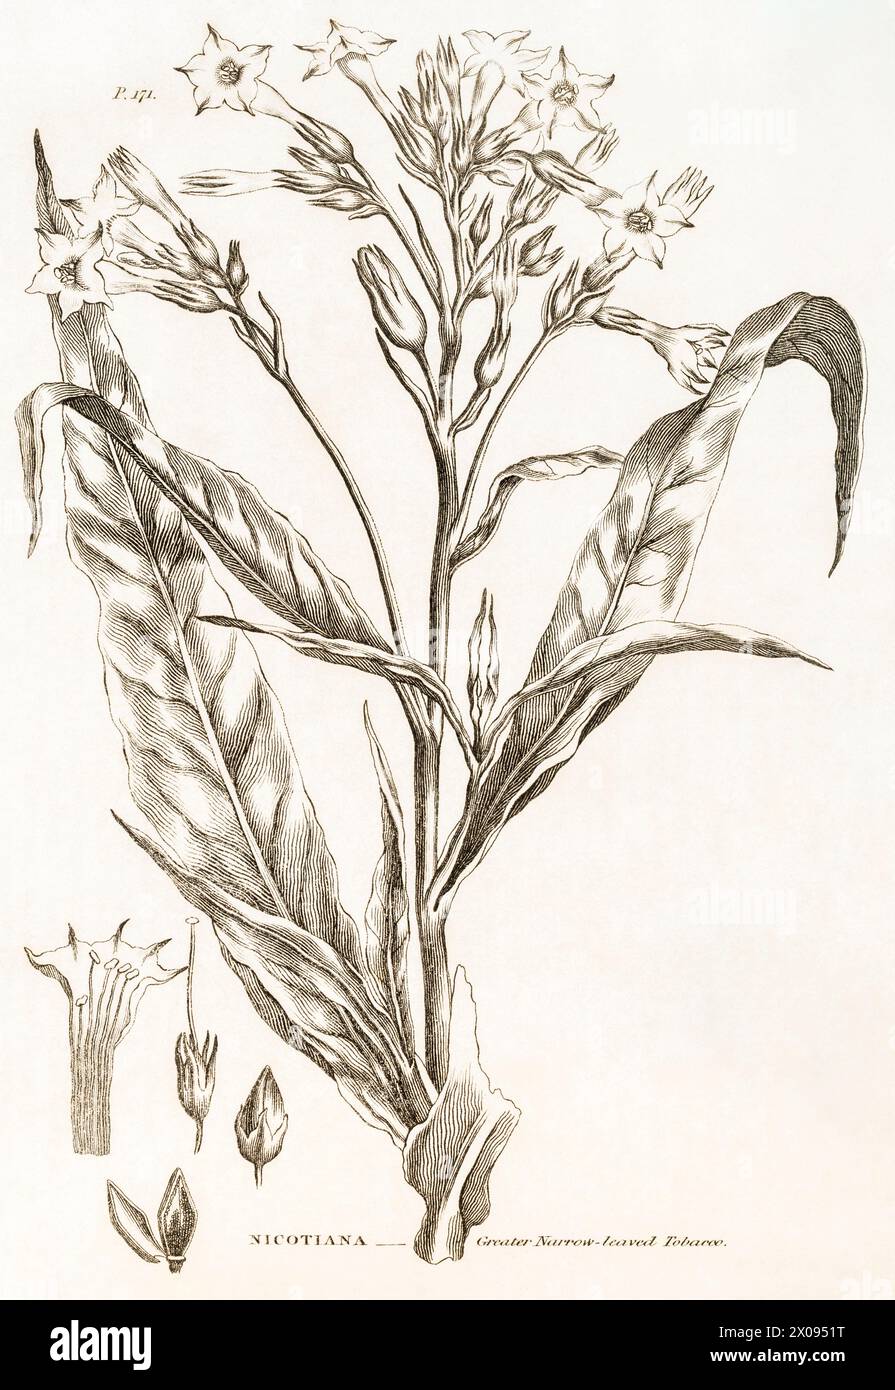 1823, 19. Jahrhundert botanischer Stich / Illustration der Großschmalblättrigen Tabakpflanze (Nicotiana) - verwendet als Heilpflanze. Siehe Hinweise. Stockfoto